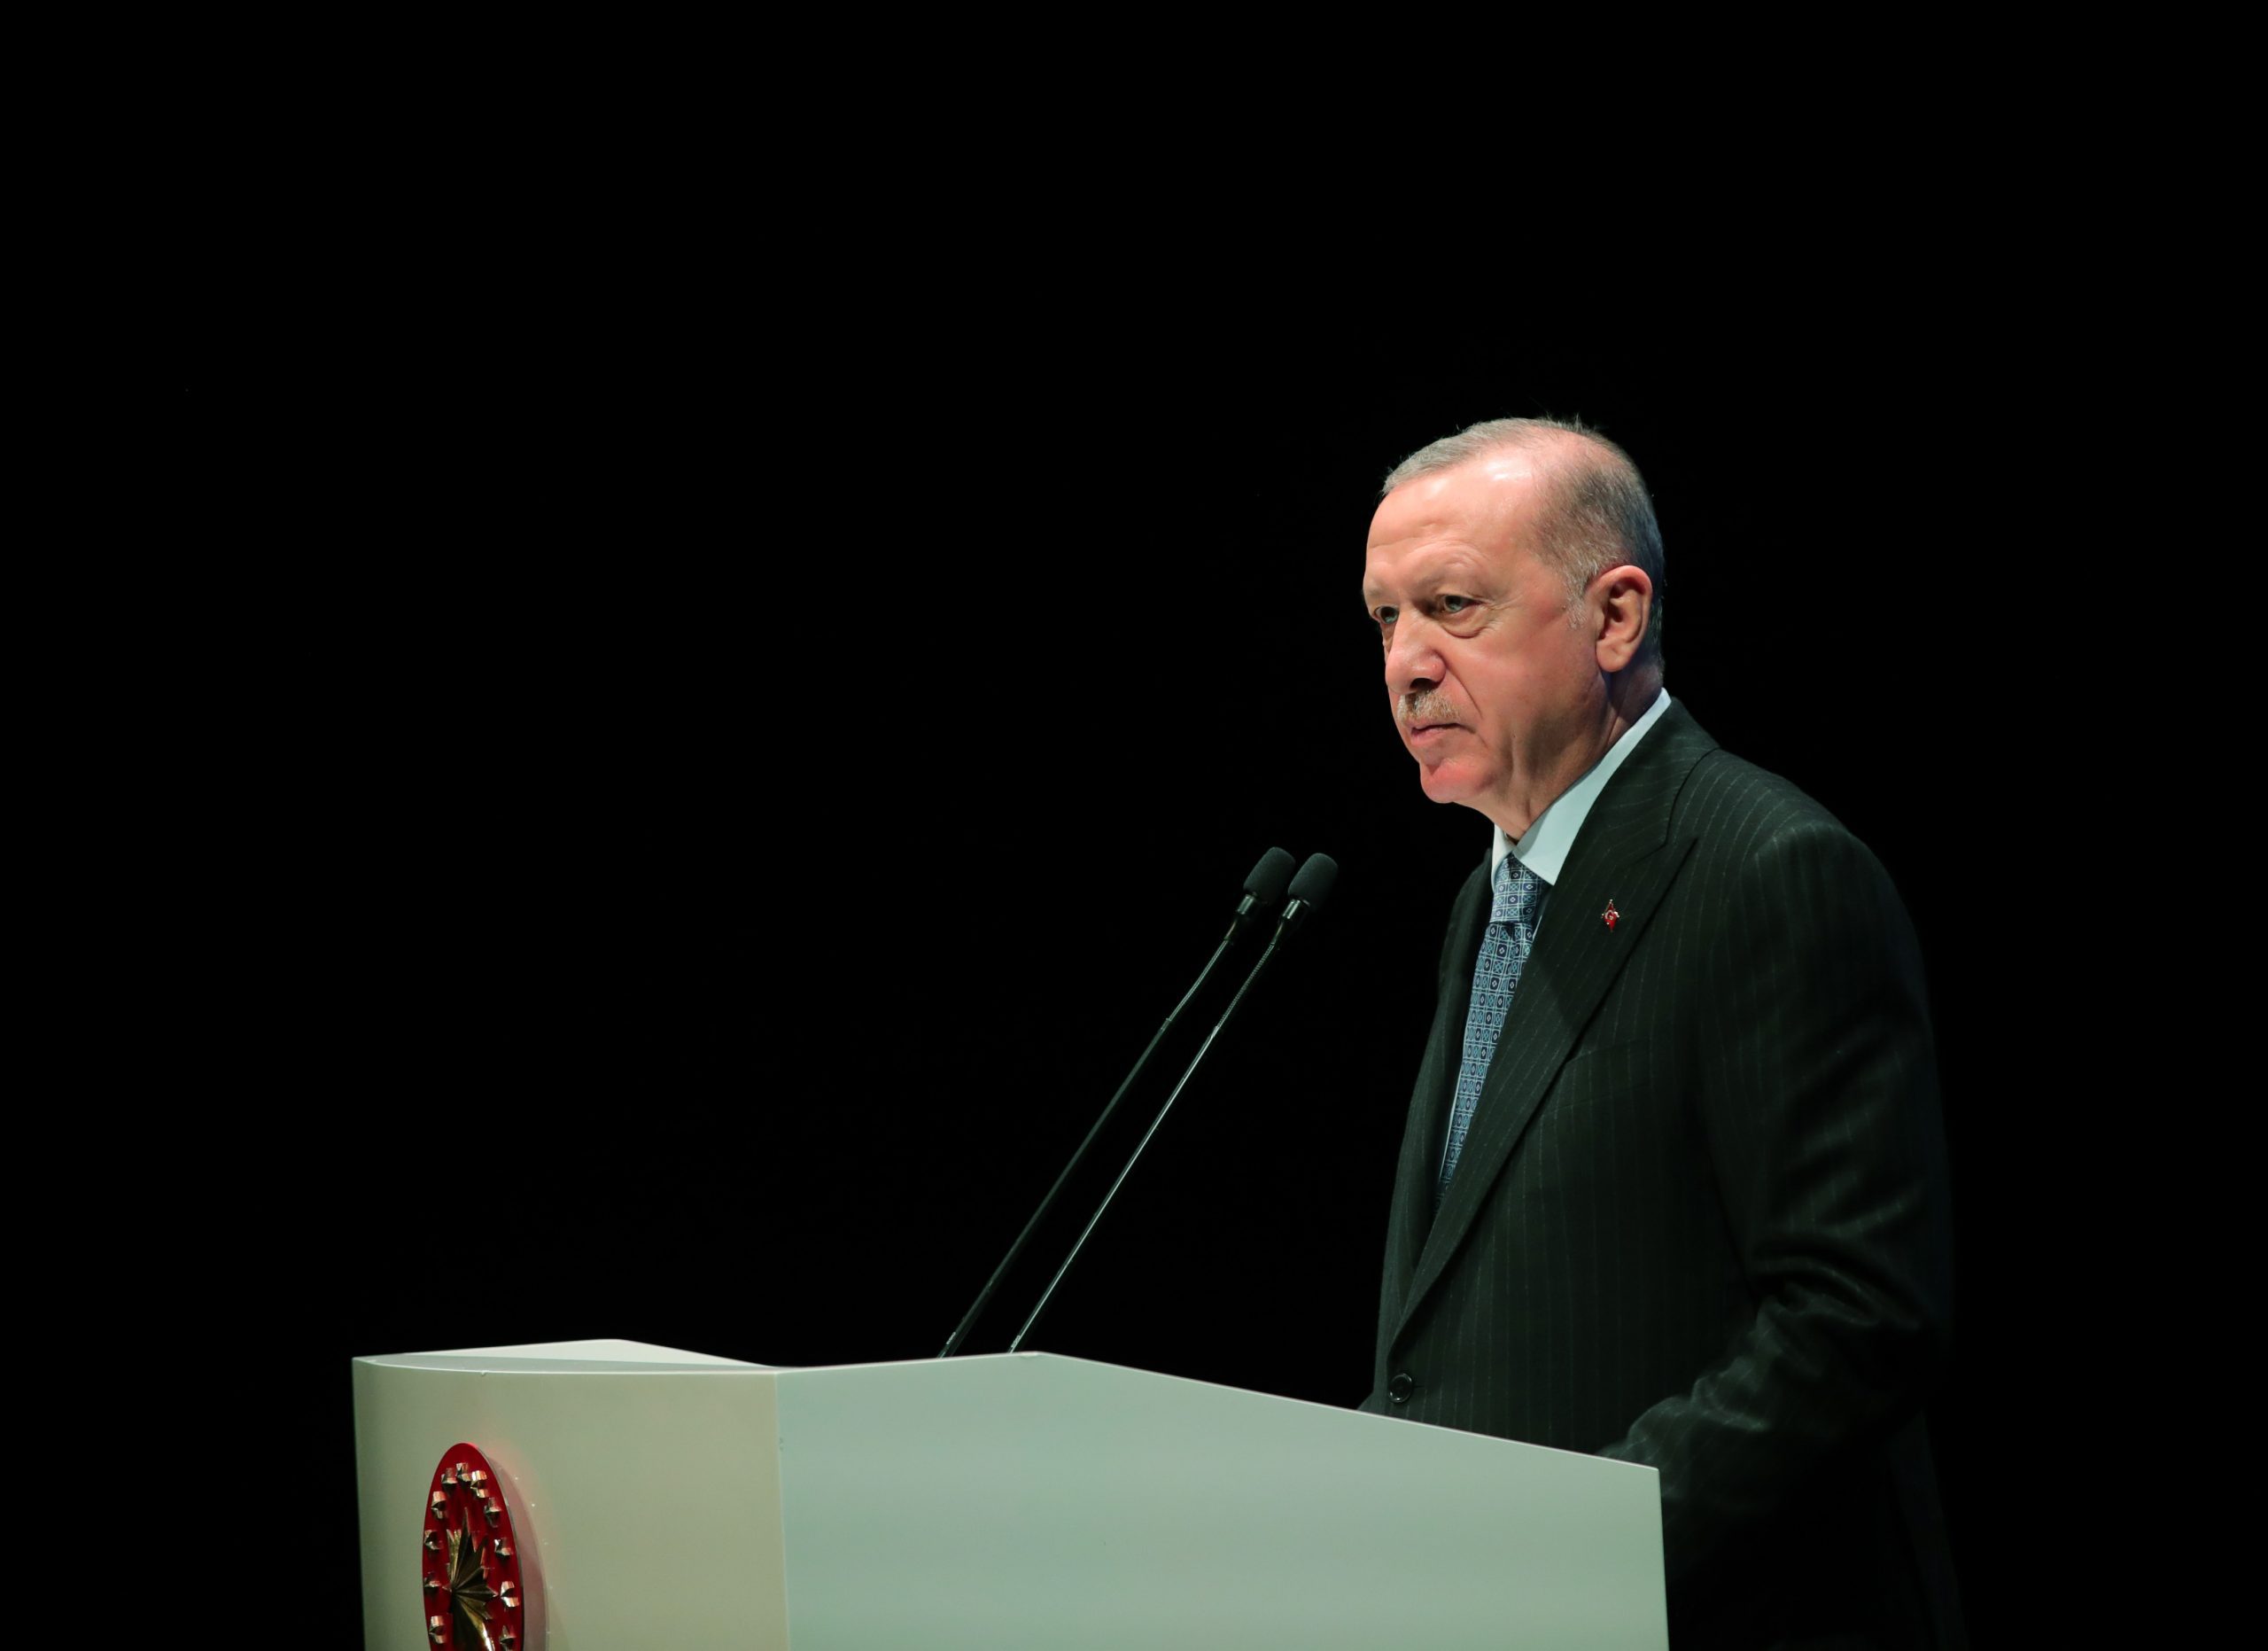 Turkey will reach 2023 goals, President Erdogan says